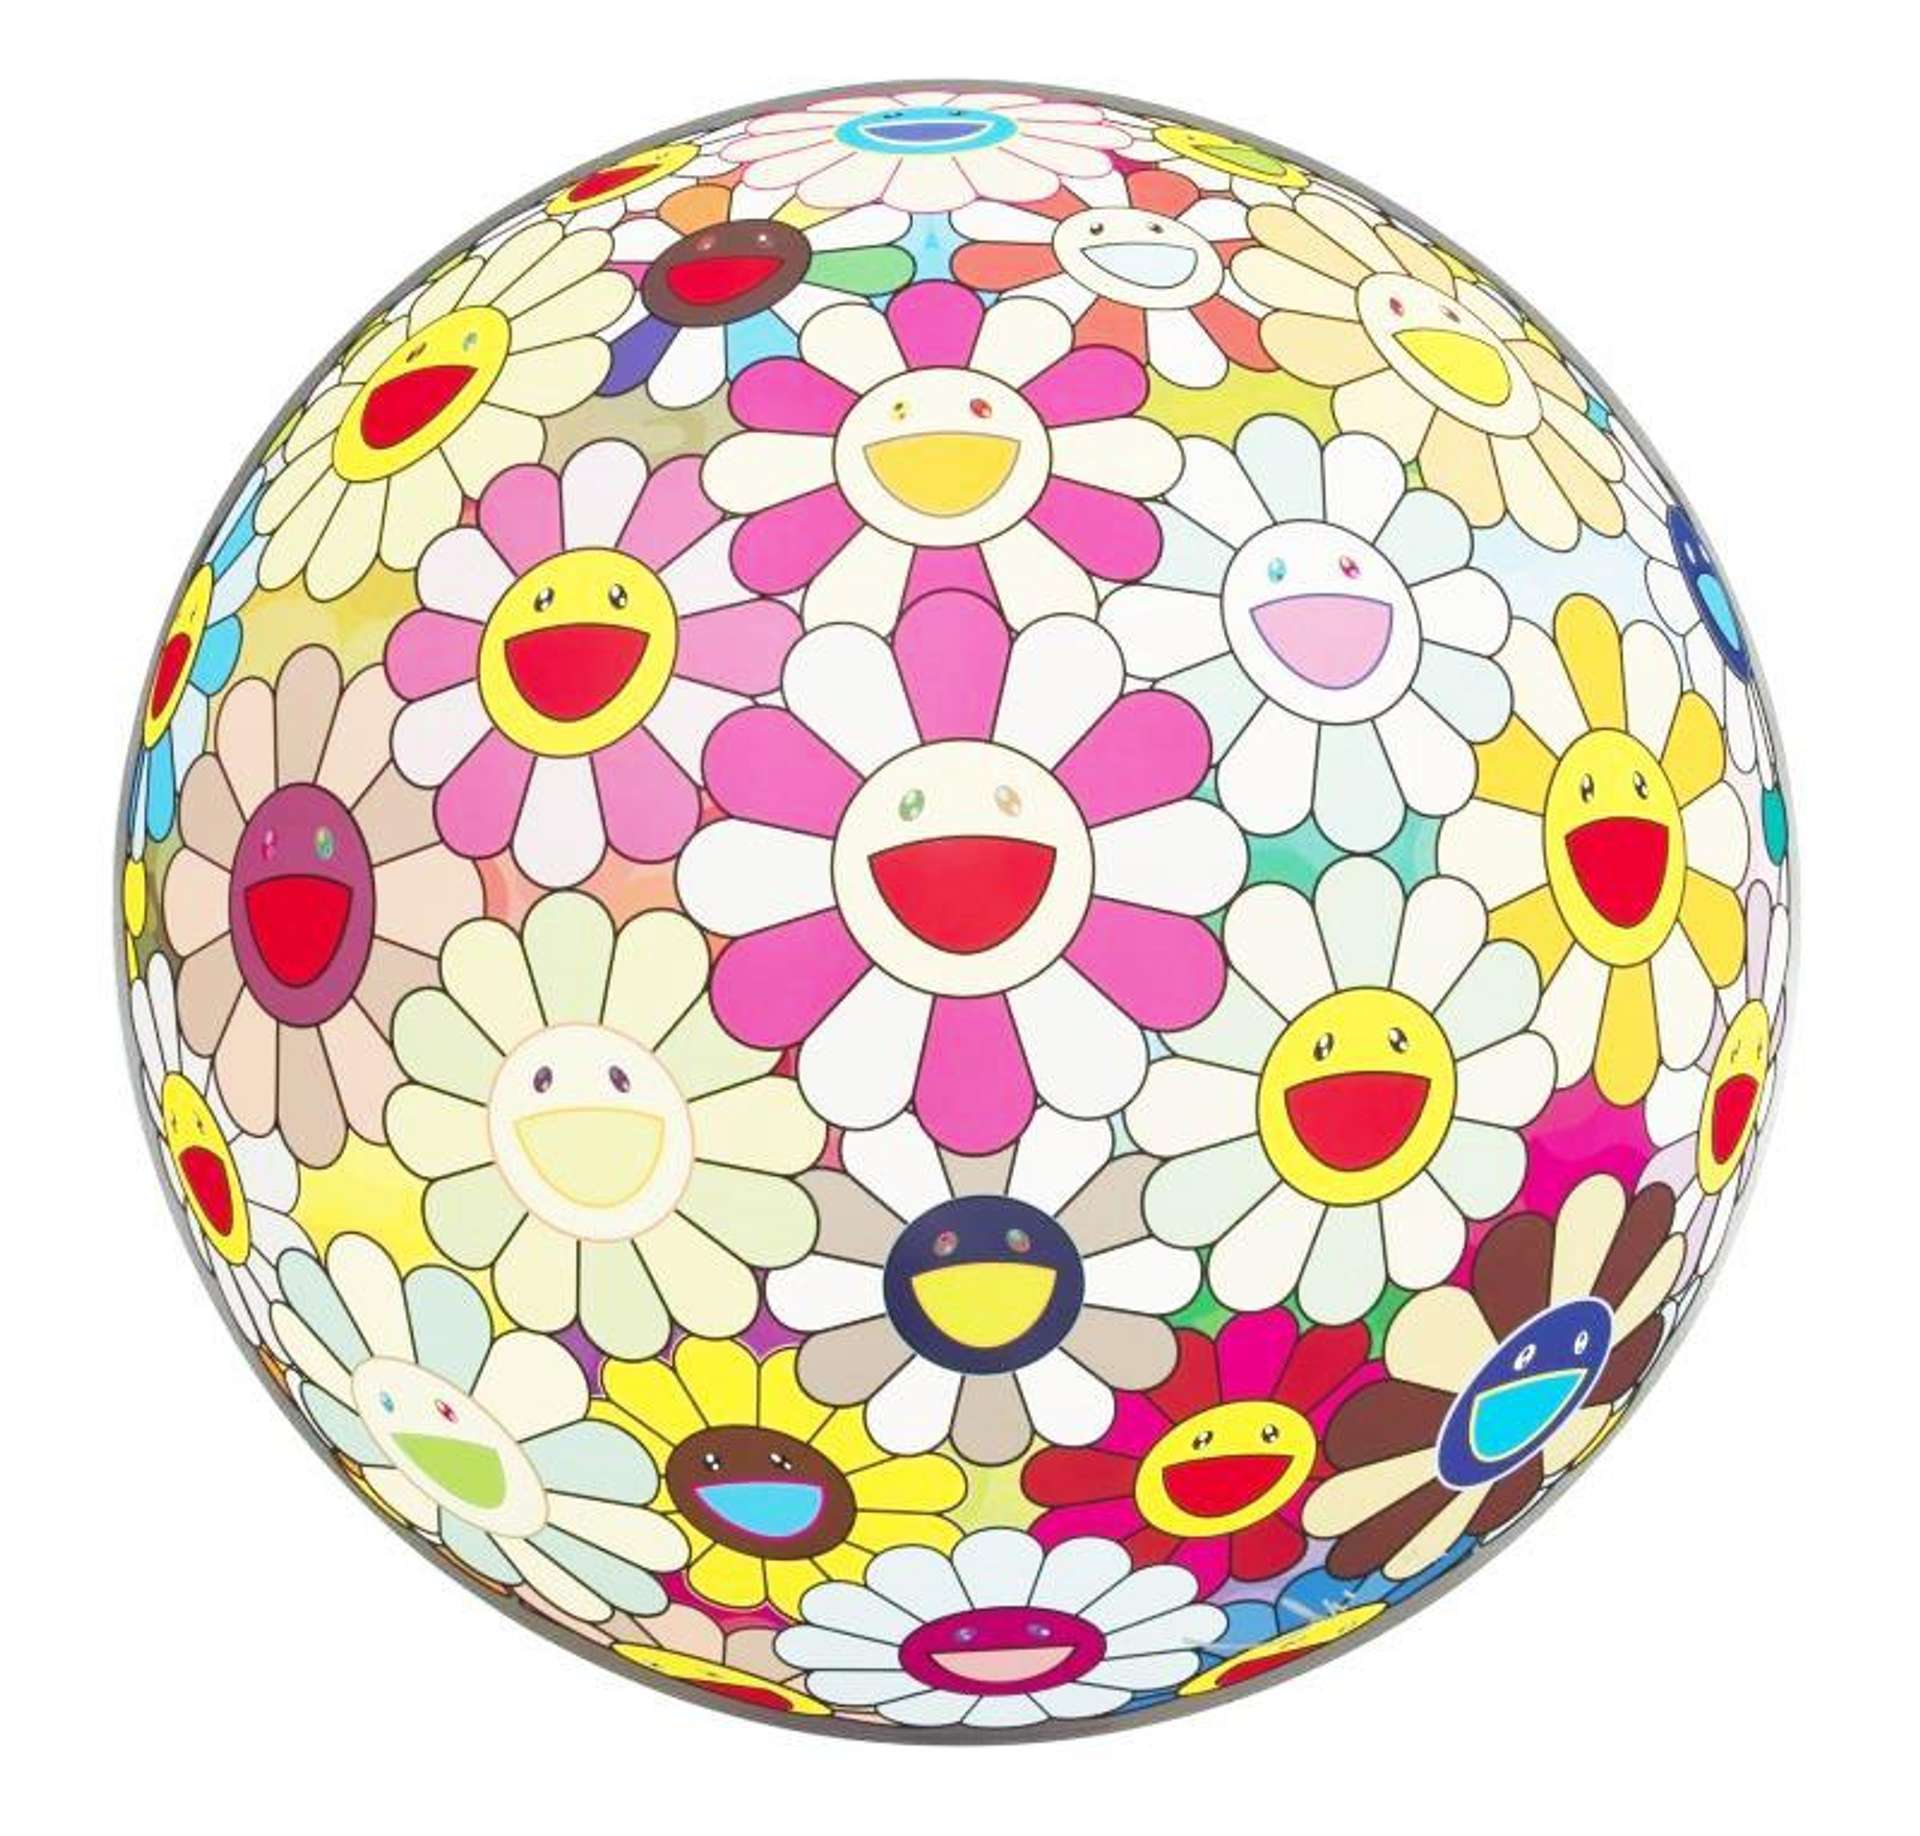 Flower Ball: Margaret by Takashi Murakami